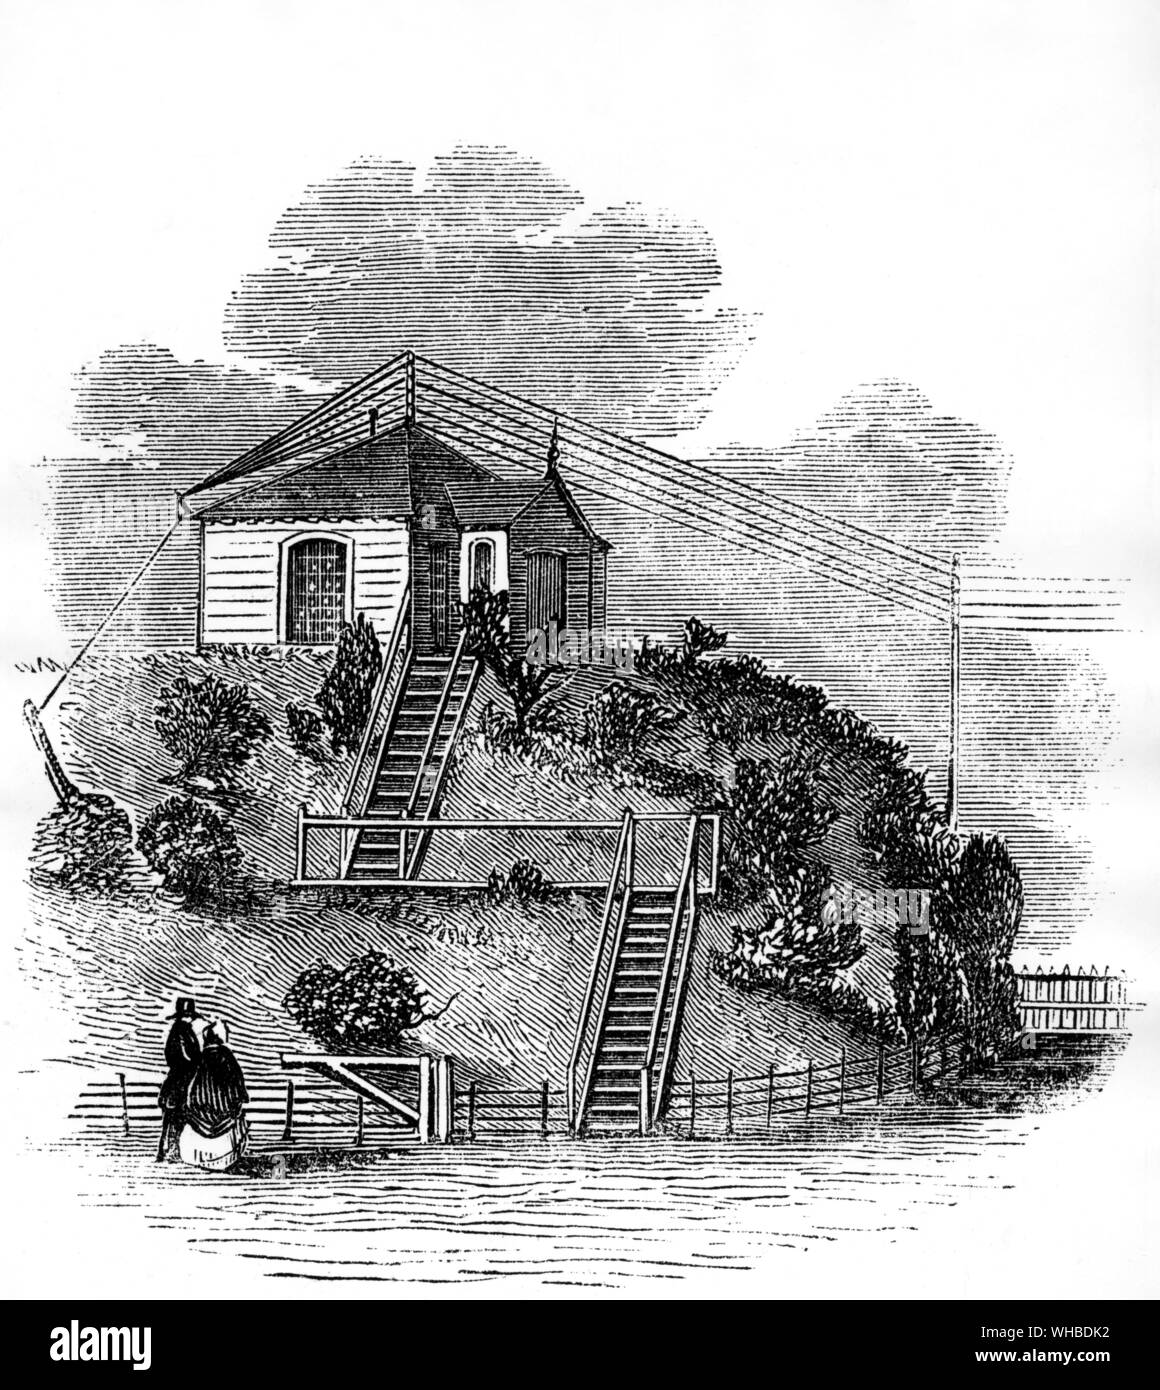 Die elektrische Telegraph Station in Slough - Senden eines Telegramms bedeutete einen steifen klettern. Ersten bezahlten Telegramme der Welt wurden von Fernschreiber Cottage in Slough am 16. Mai 1843 übermittelt. Stockfoto